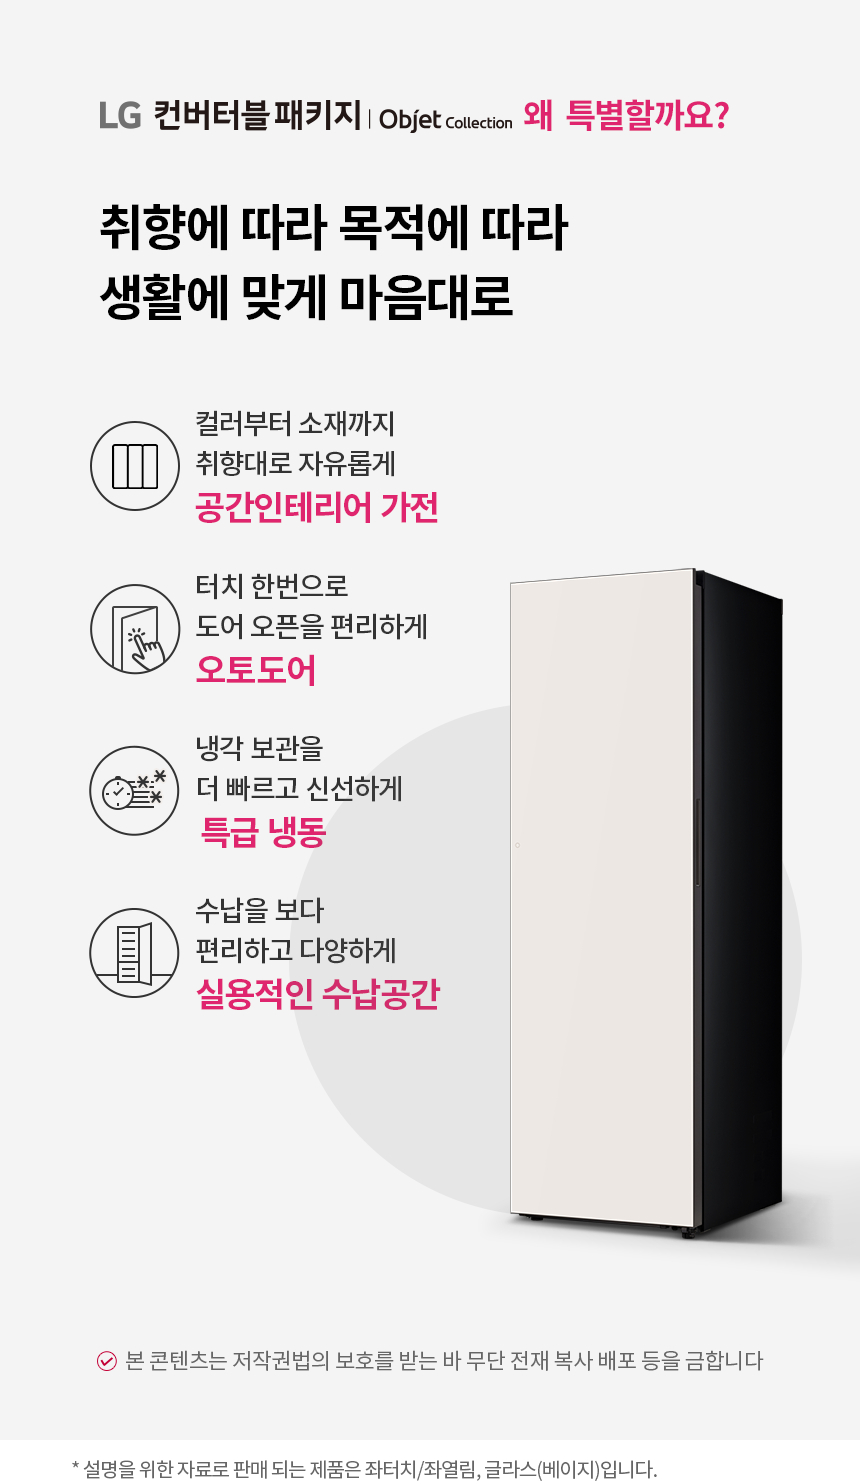 LG Y322GB8 컨버터블 패키지 오브제컬렉션 냉동전용고 (베이지) 324ℓ 상세정보1